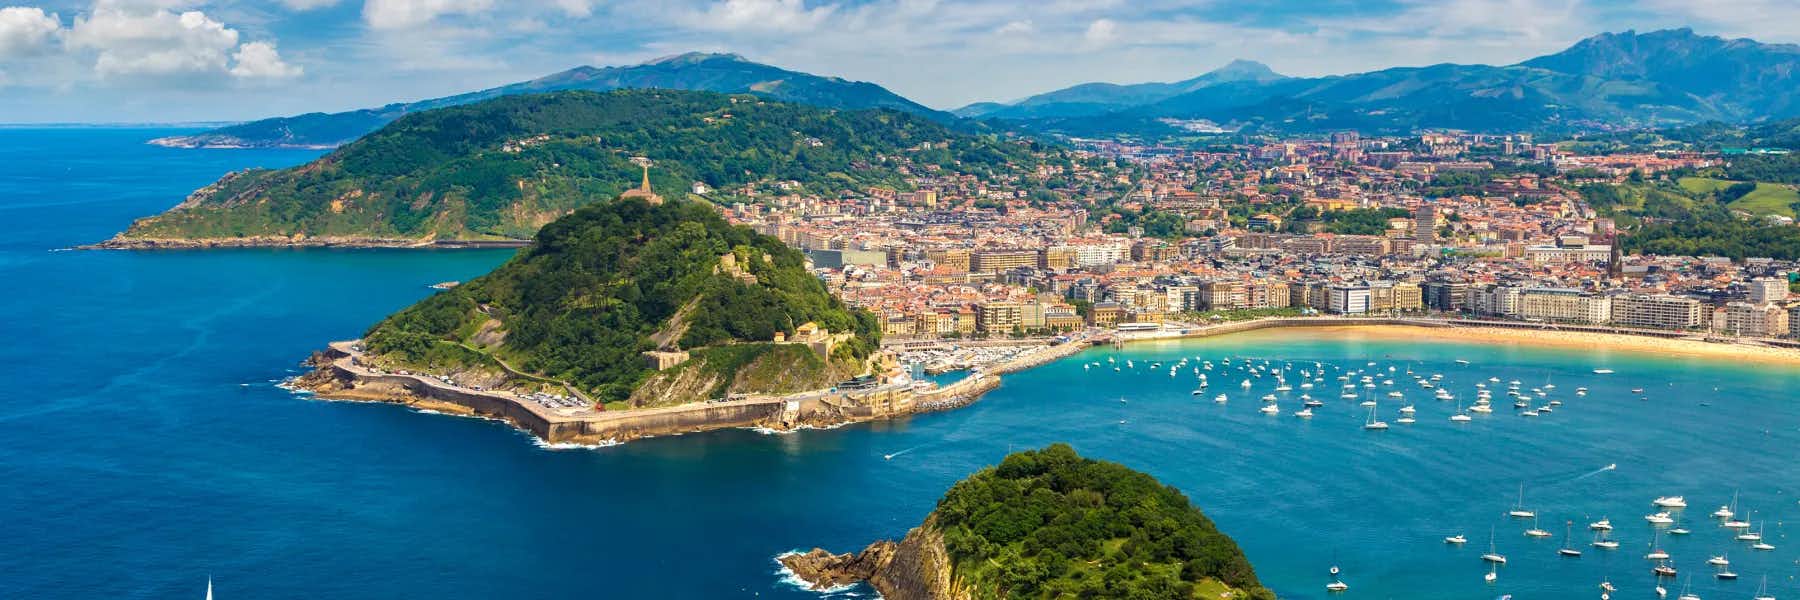 My 5 Favorite Seaside Towns in Spain